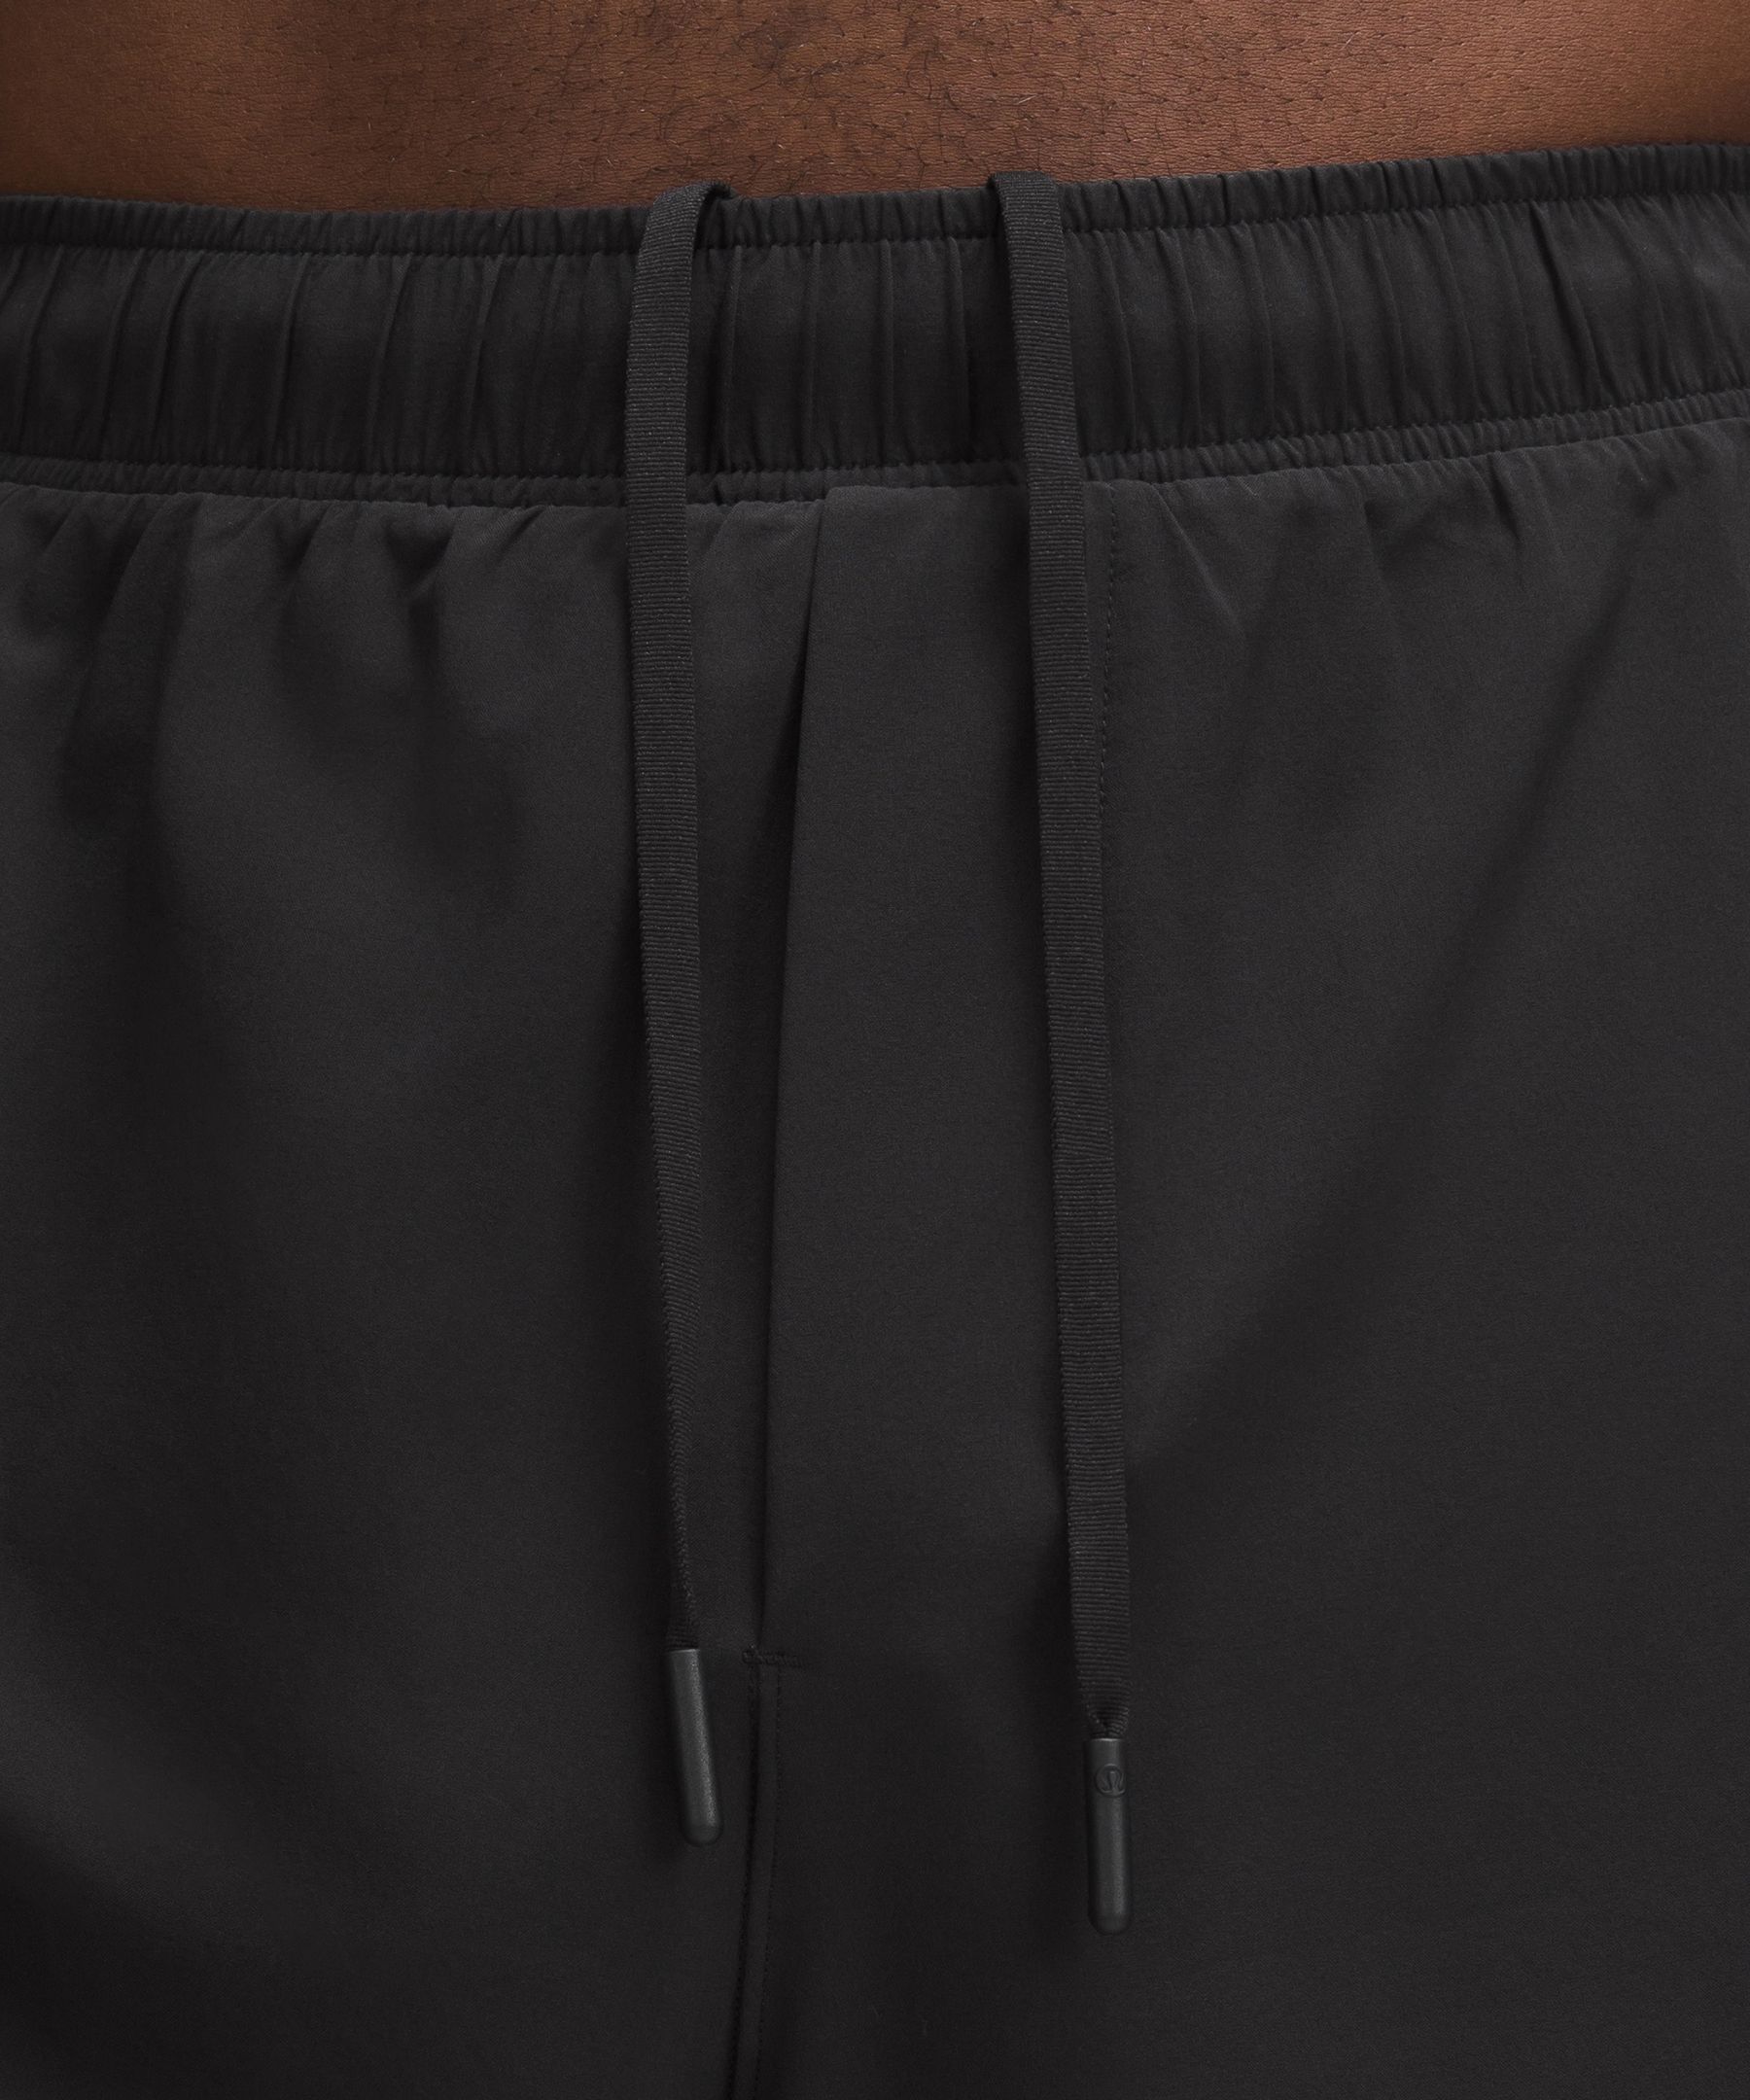 lululemon shorts without liner